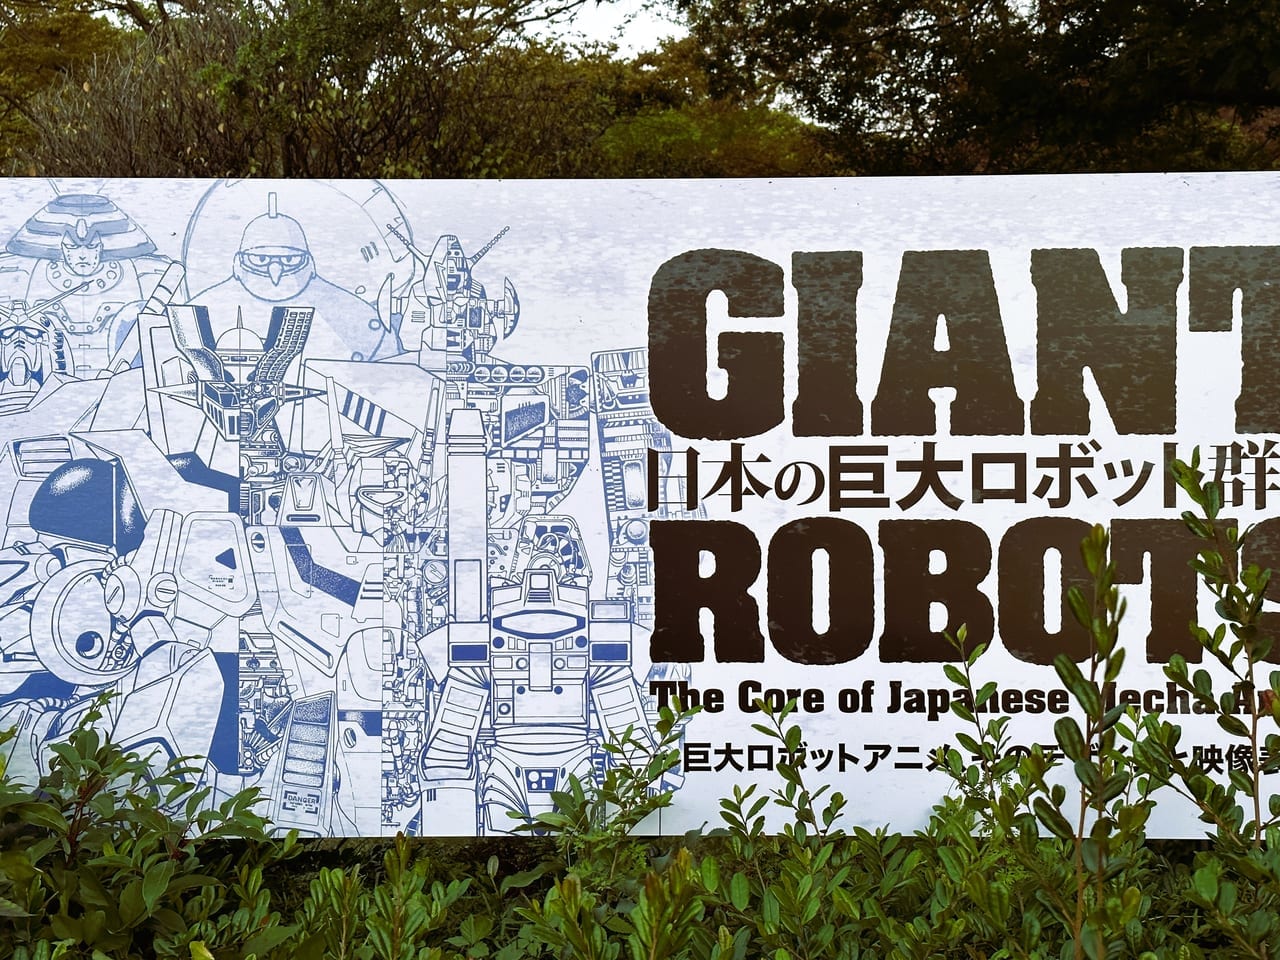 「巨大ロボットとは何か」を問いかける、かつてない展覧会『 GIANT ROBOTS 』。福岡市美術館で２０２３年１１月１２日まで開催中です。